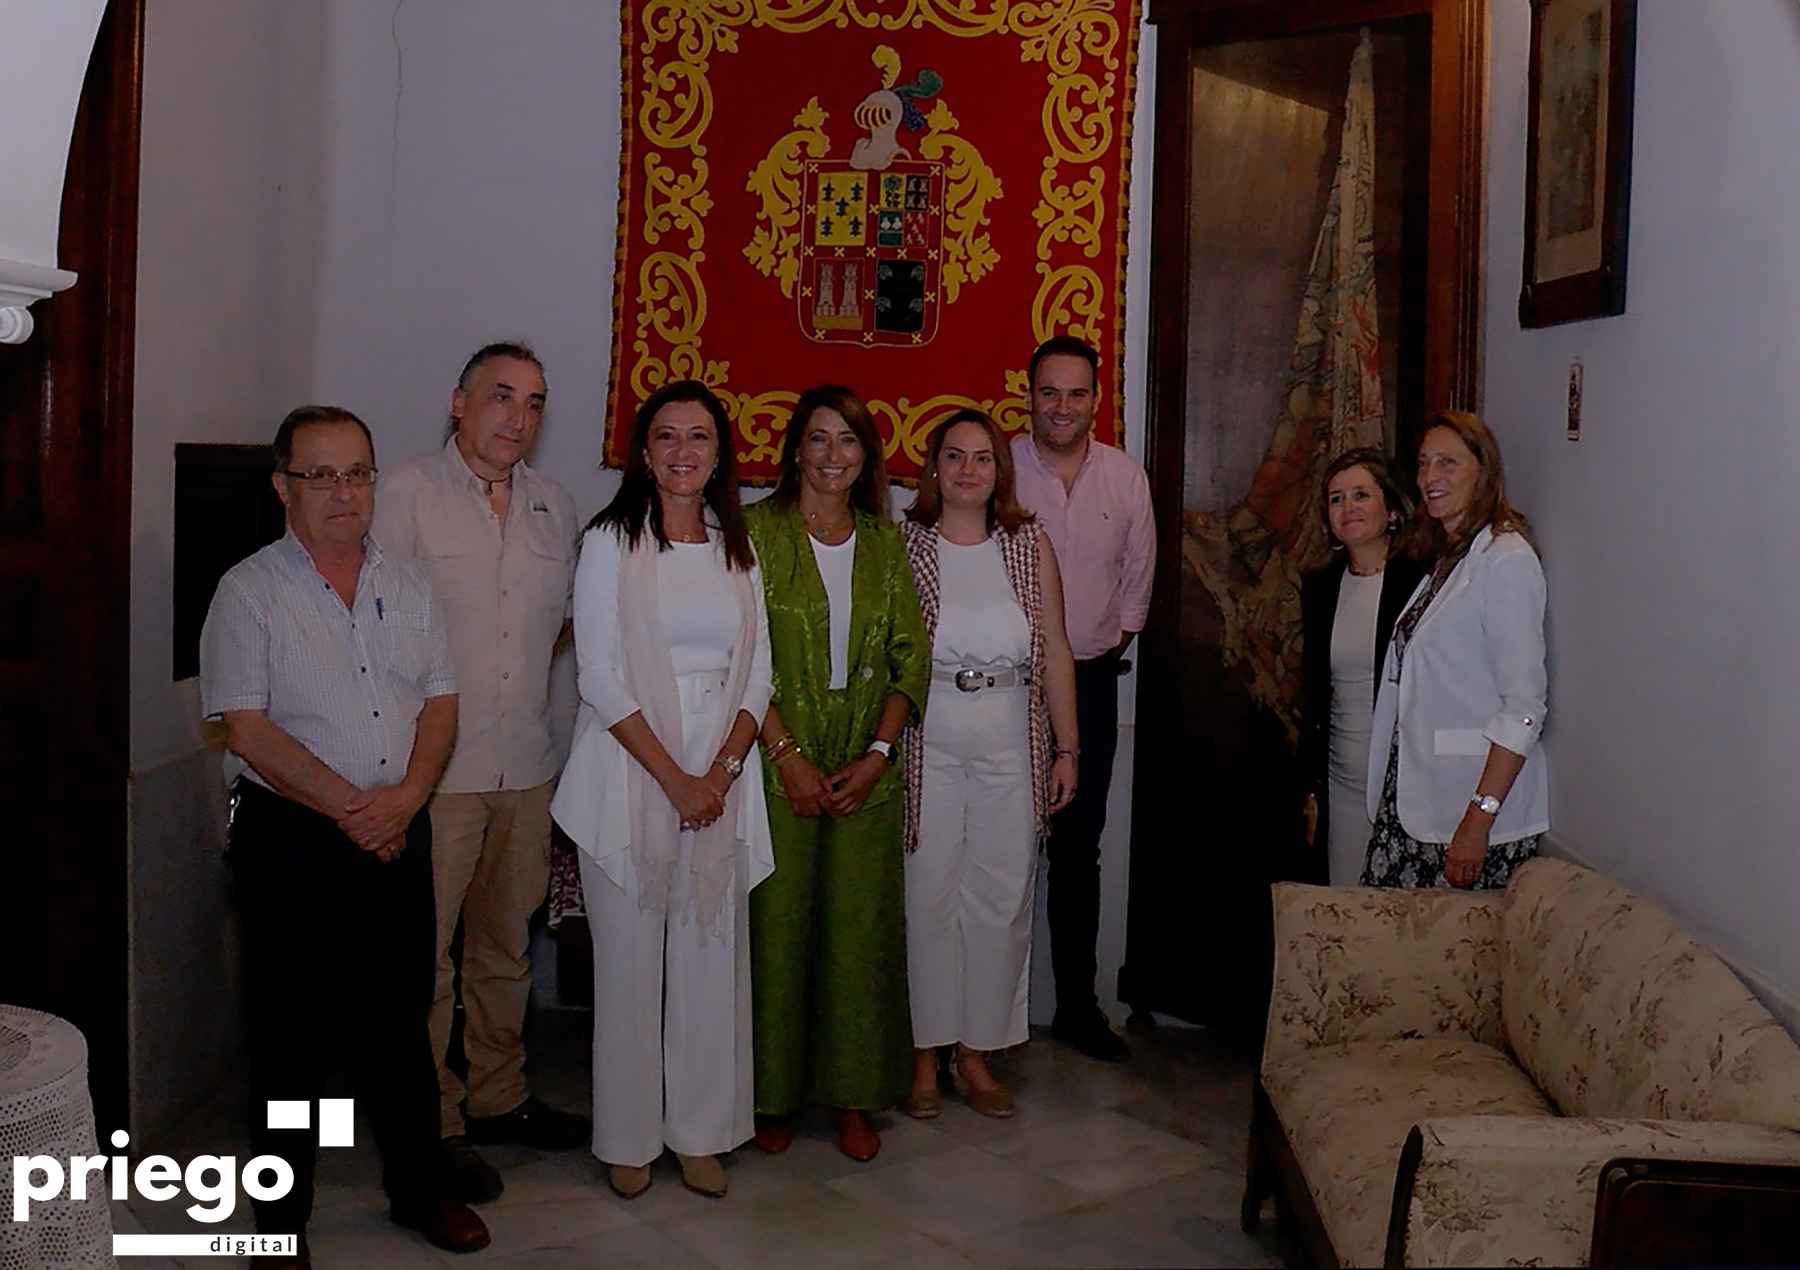 Autoridades y familia propietaria junto al Pendón de los Zamorano, expuesto en la vitrina de la derecha de la imagen.